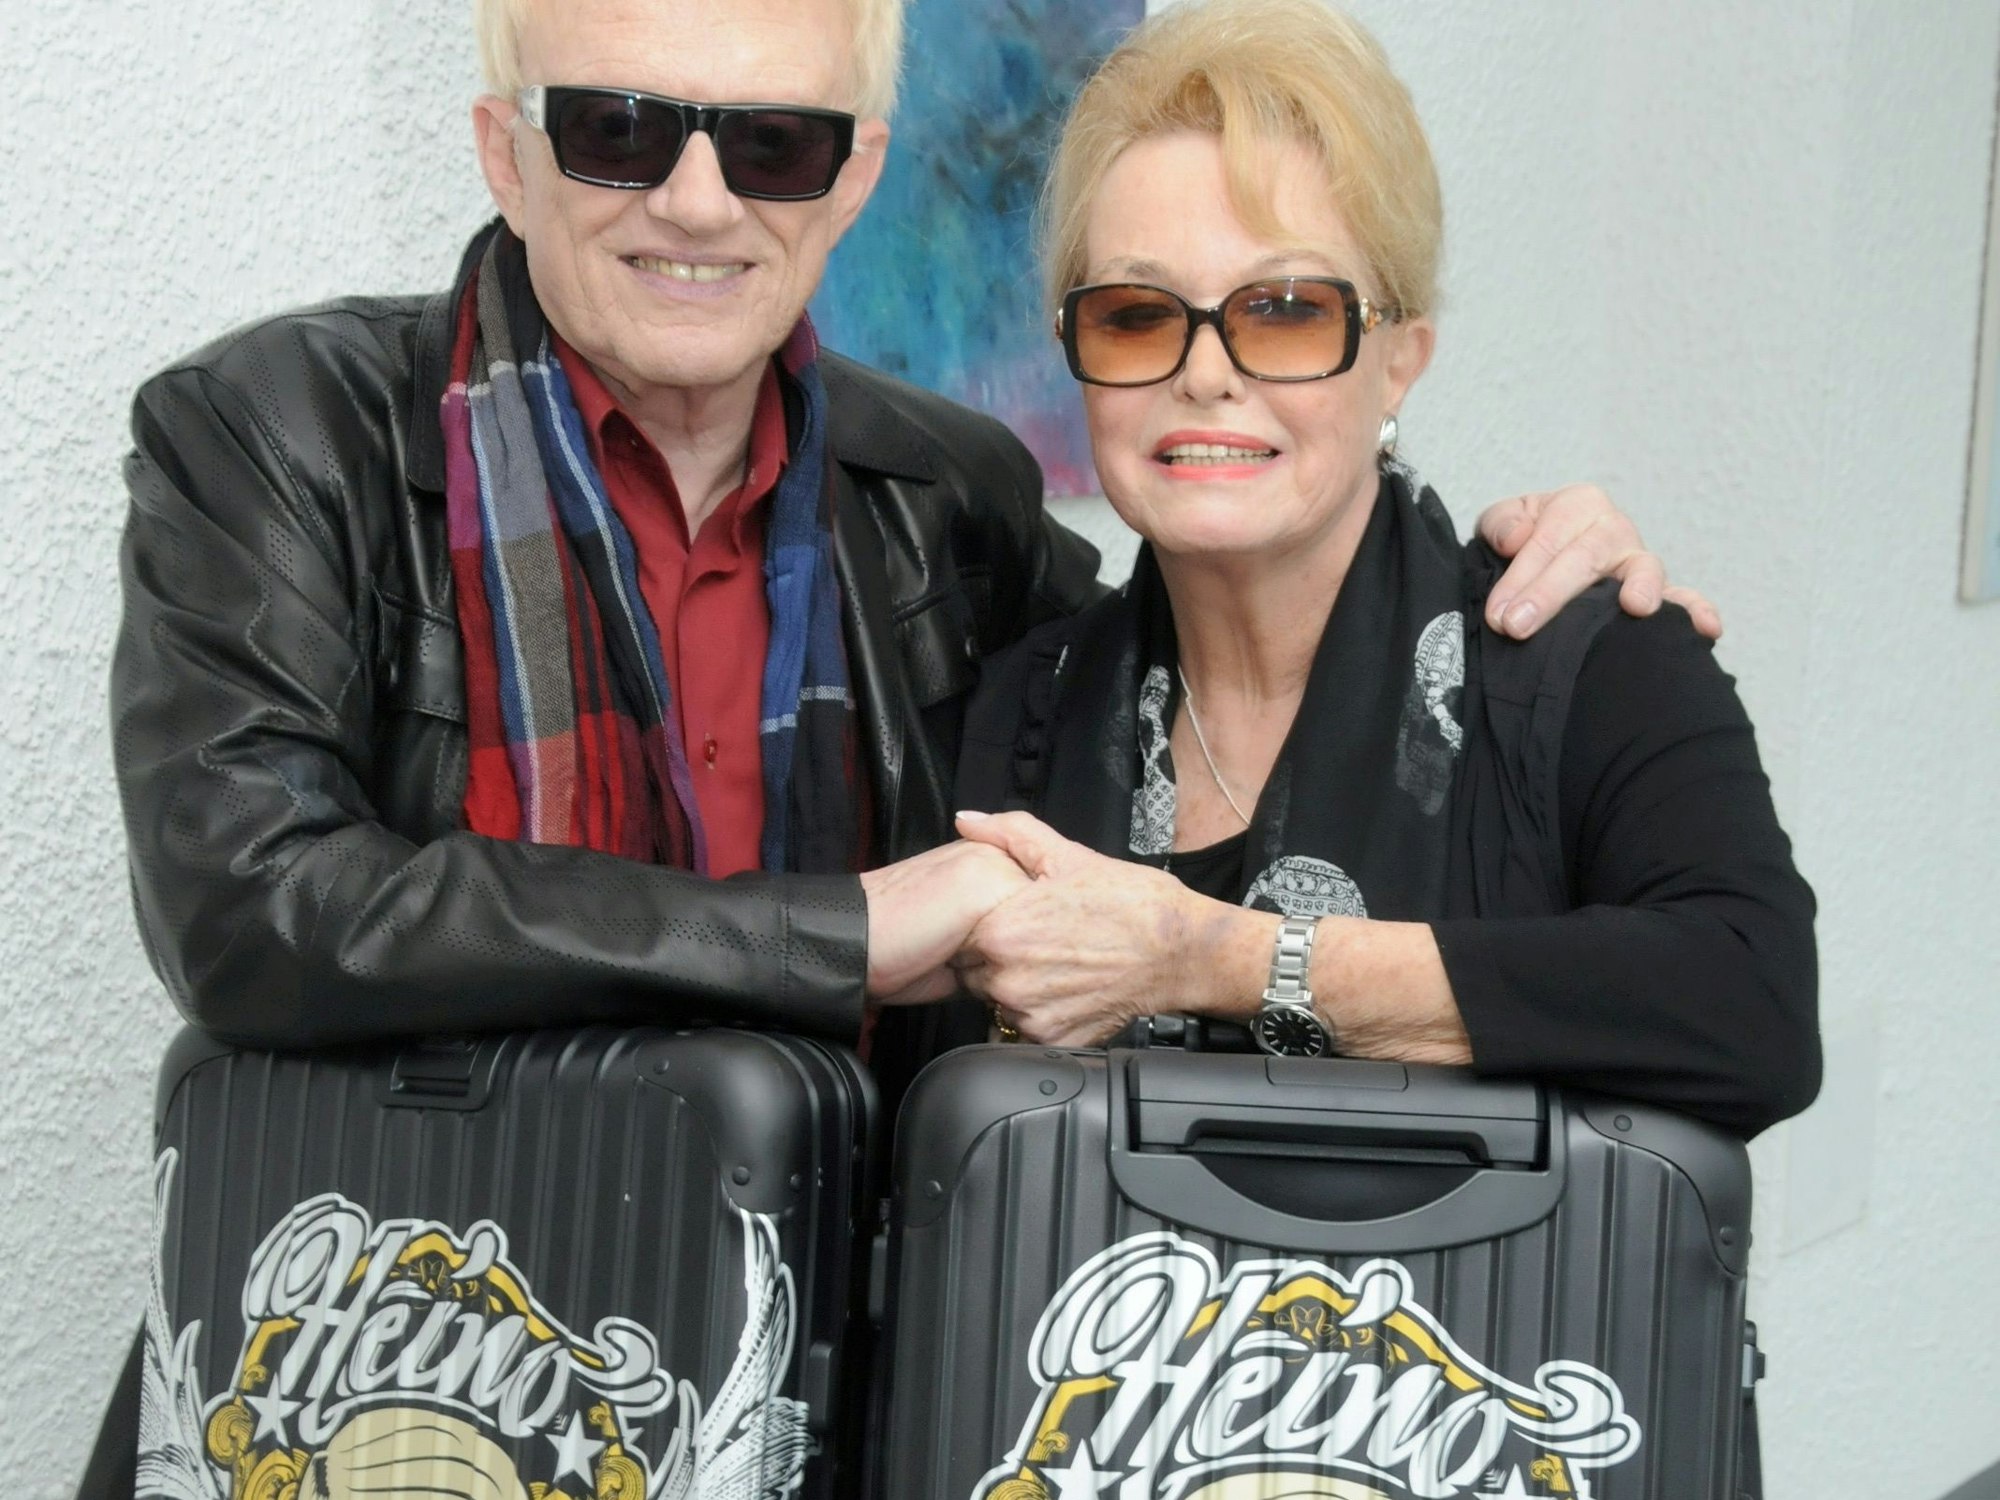 Das Bild zeigt Heino und Hannelore, wie sie auf zwei Koffern Händchen halten.